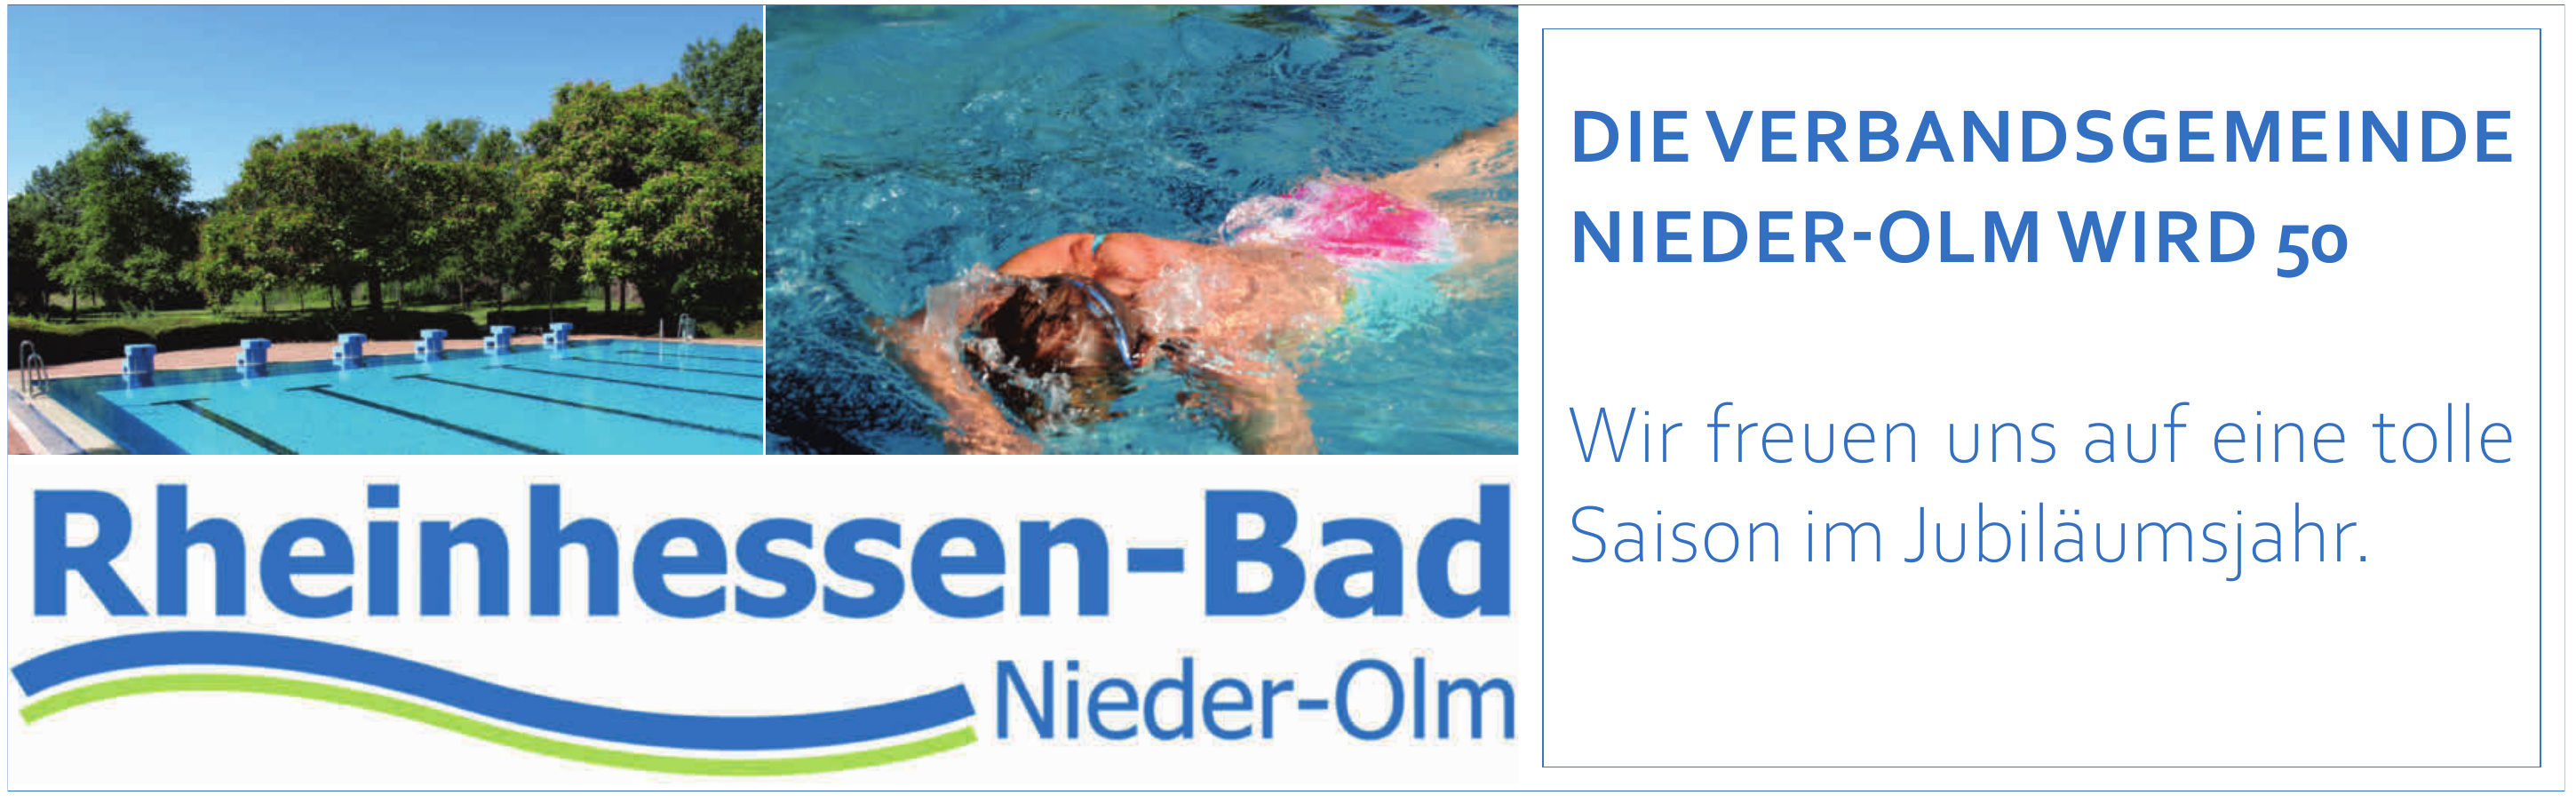 Rheinhessen-Bad Nieder-Olm